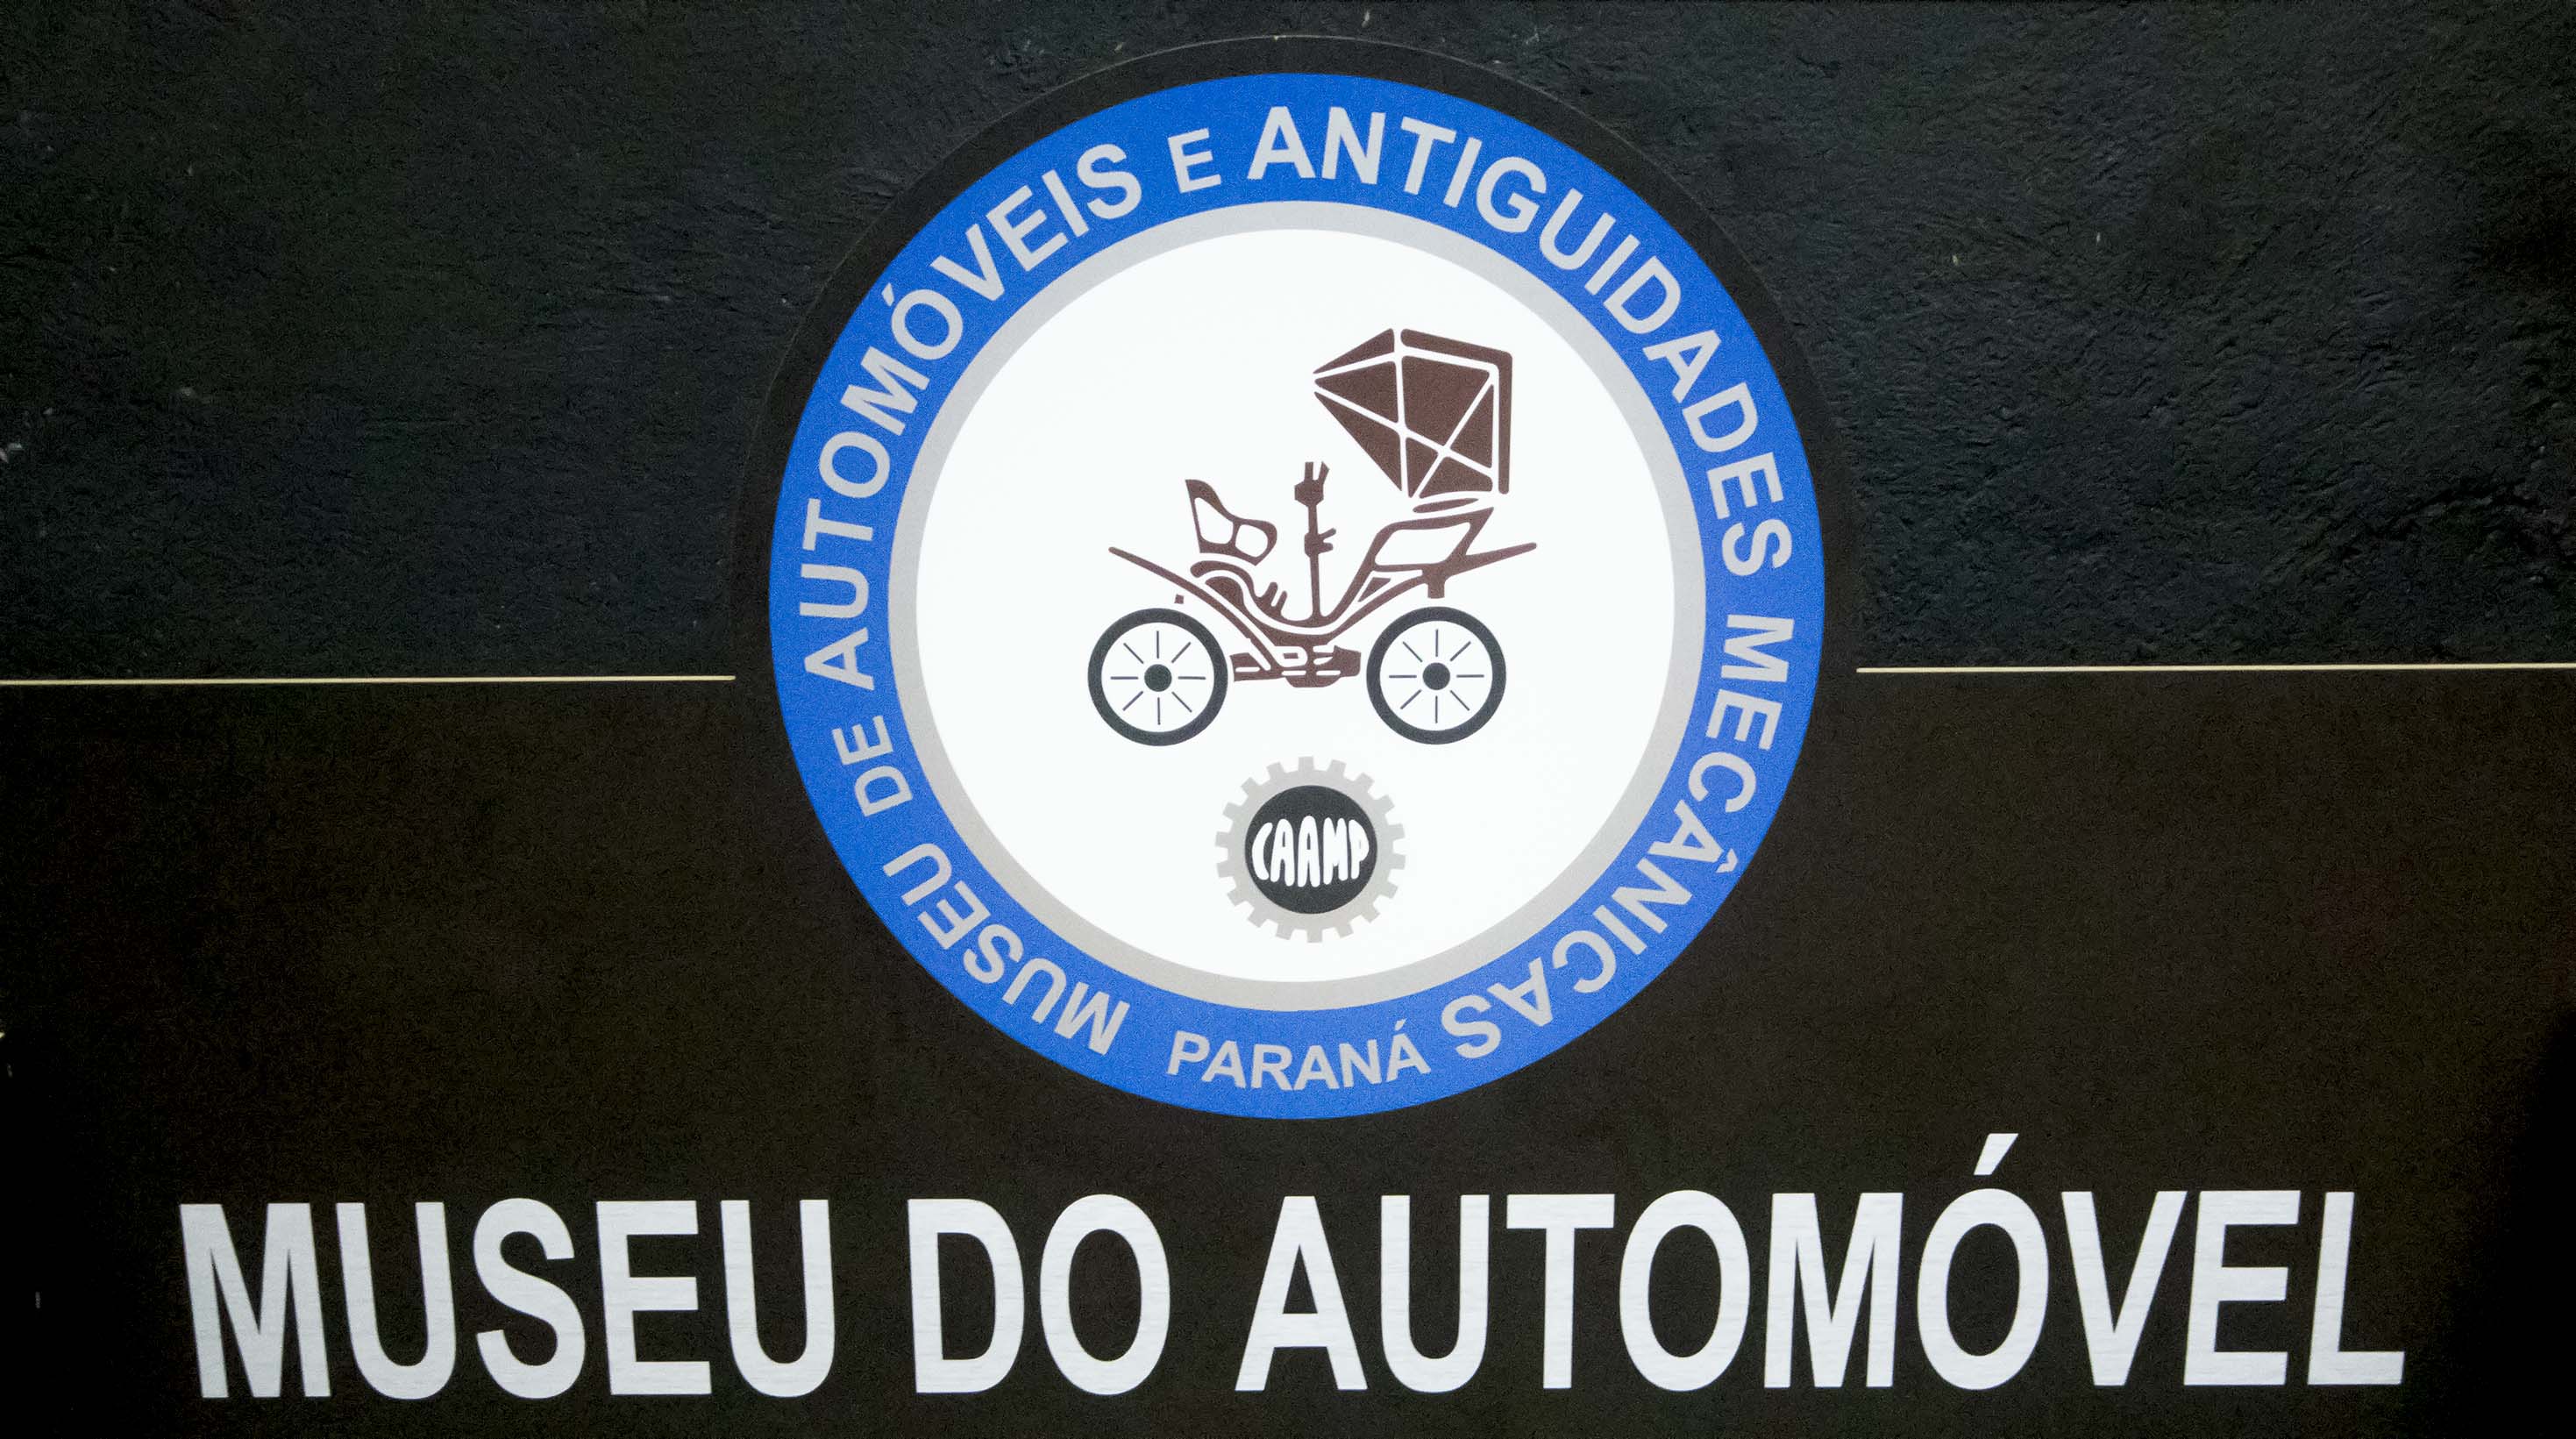 Curitiba Motor Museum